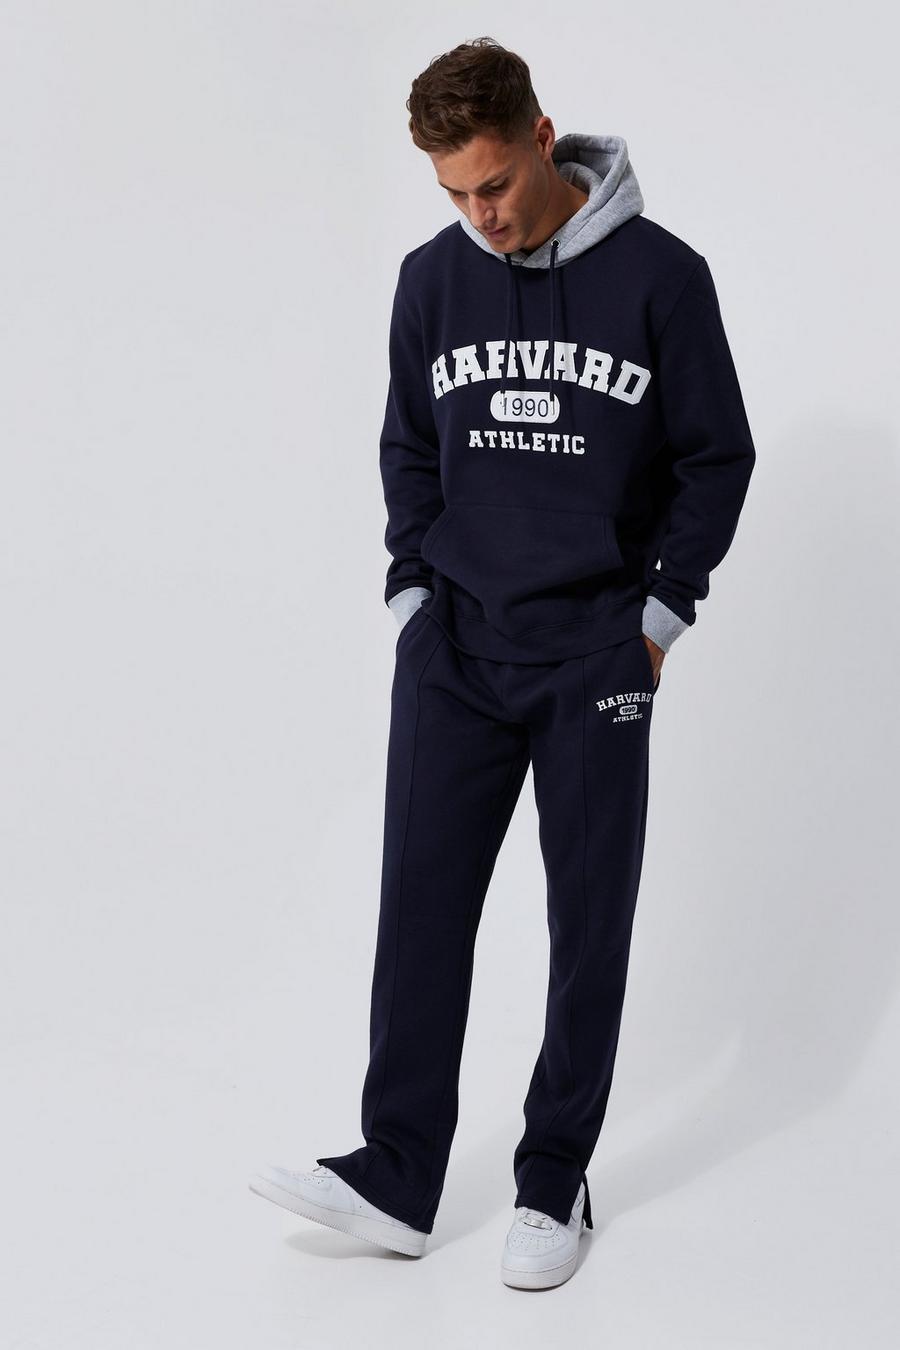 Chándal Tall con capucha y estampado universitario de Harvard, Navy azul marino